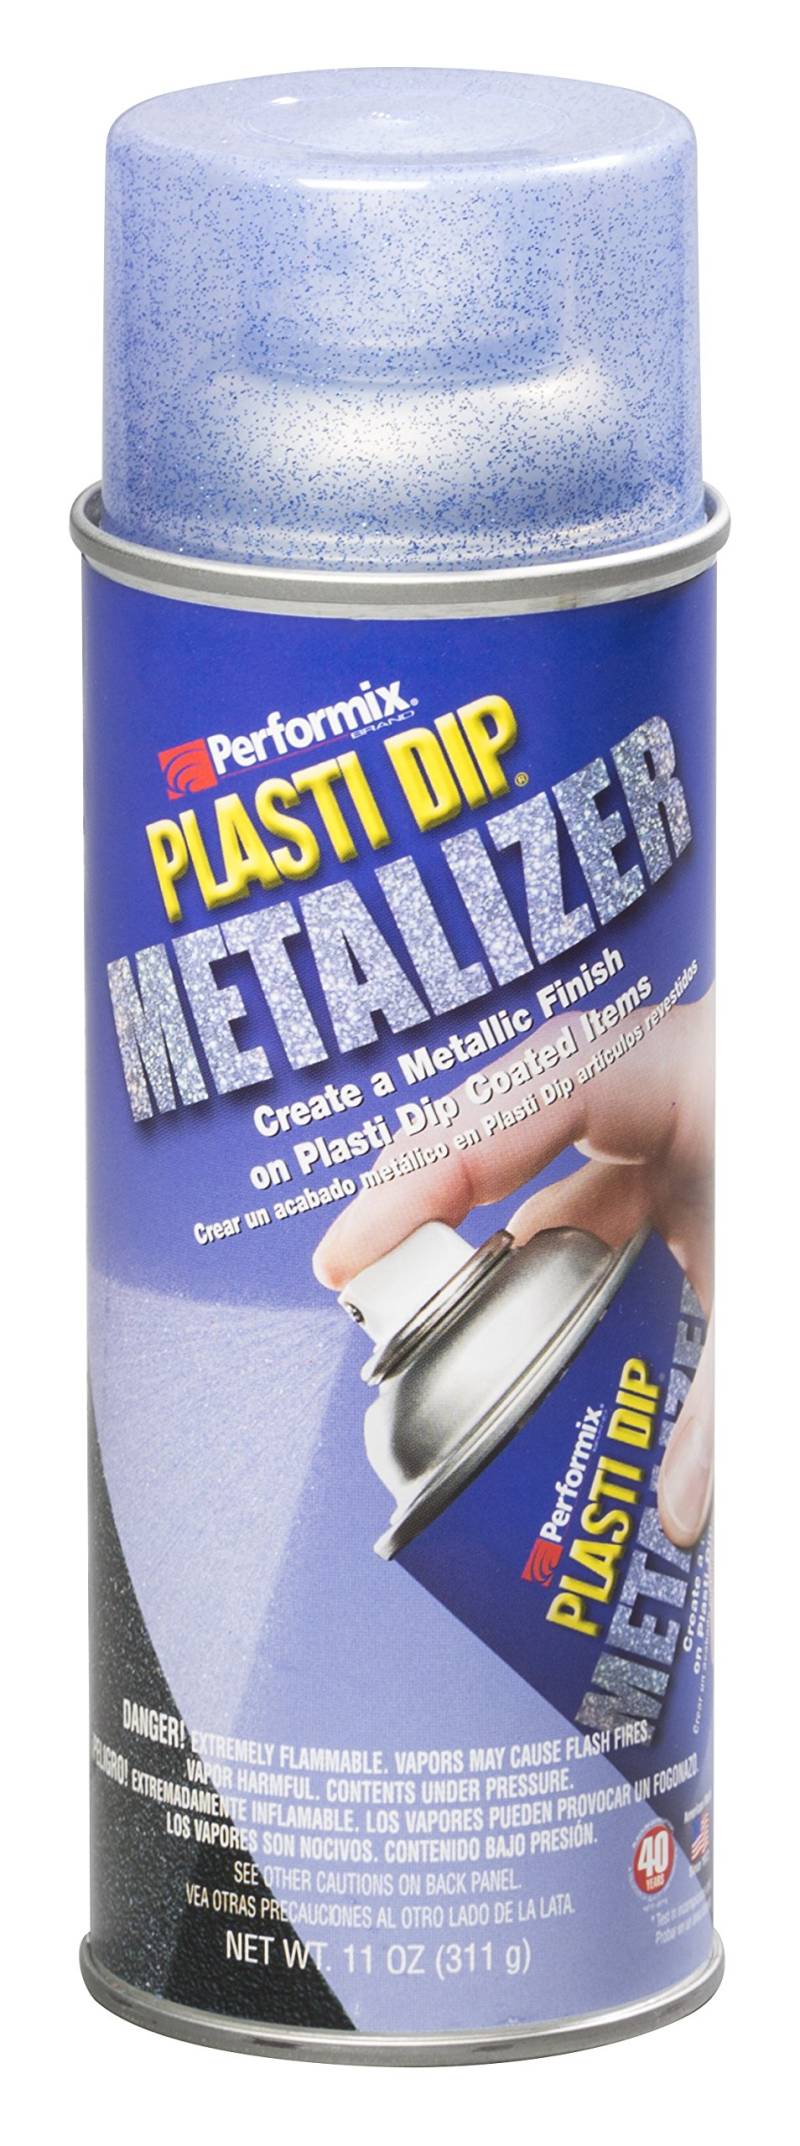 Plasti Dip Sprühfolie Sprühdose Blau Metalizer - 325 ml - Original Performix USA Produkt von Plasti Dip